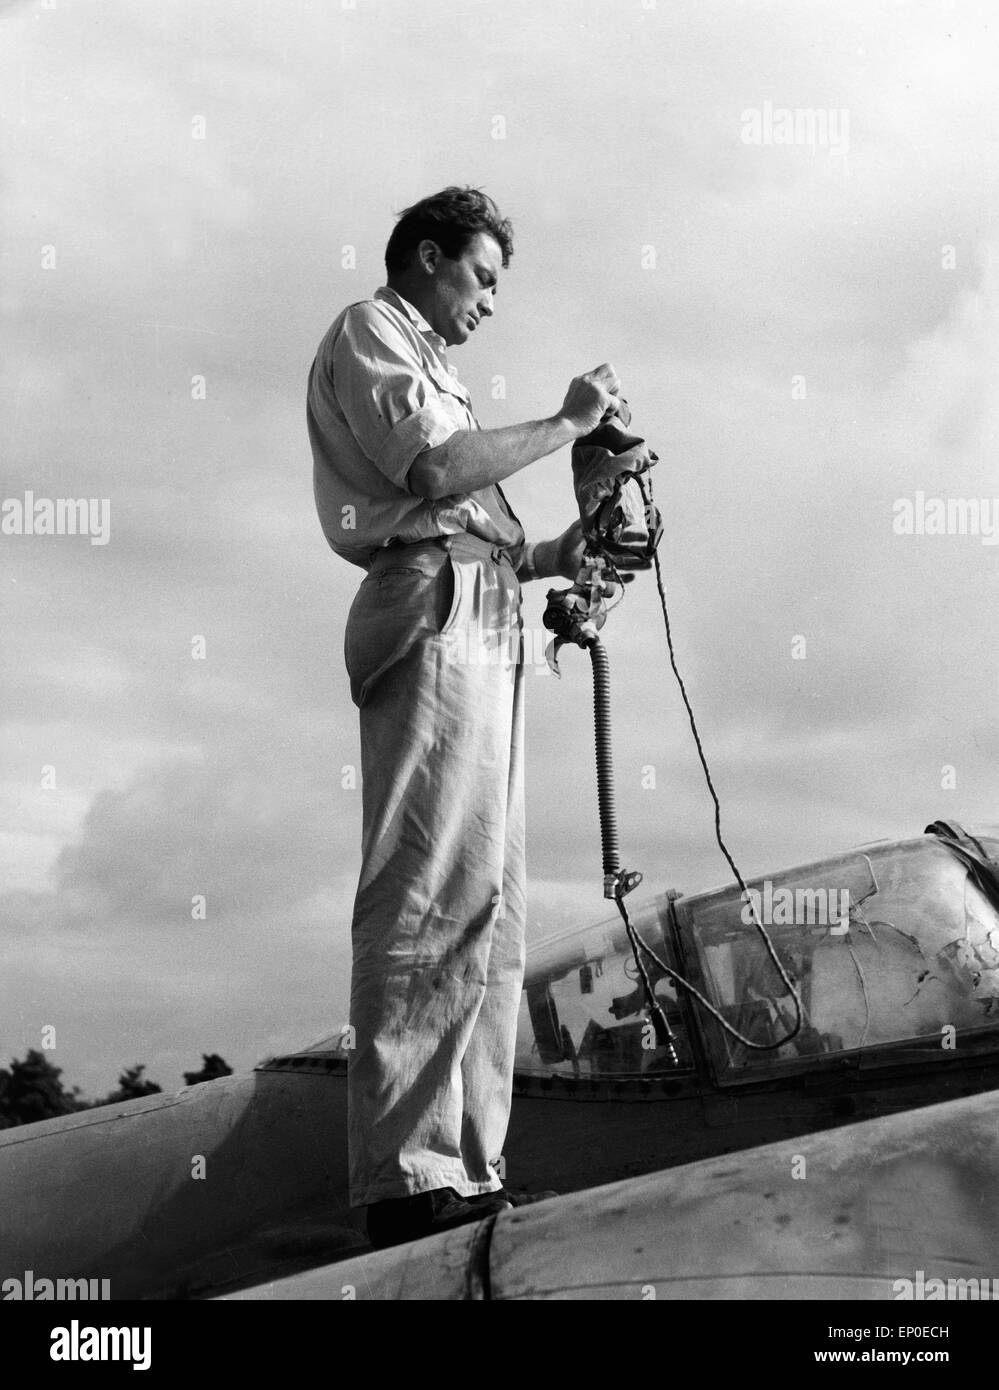 Der amerikanische Schauspieler Gregory Peck richtet seinen Helm für den Film 'Flammen über Fernost' her, 1954. American actor Gr Stock Photo